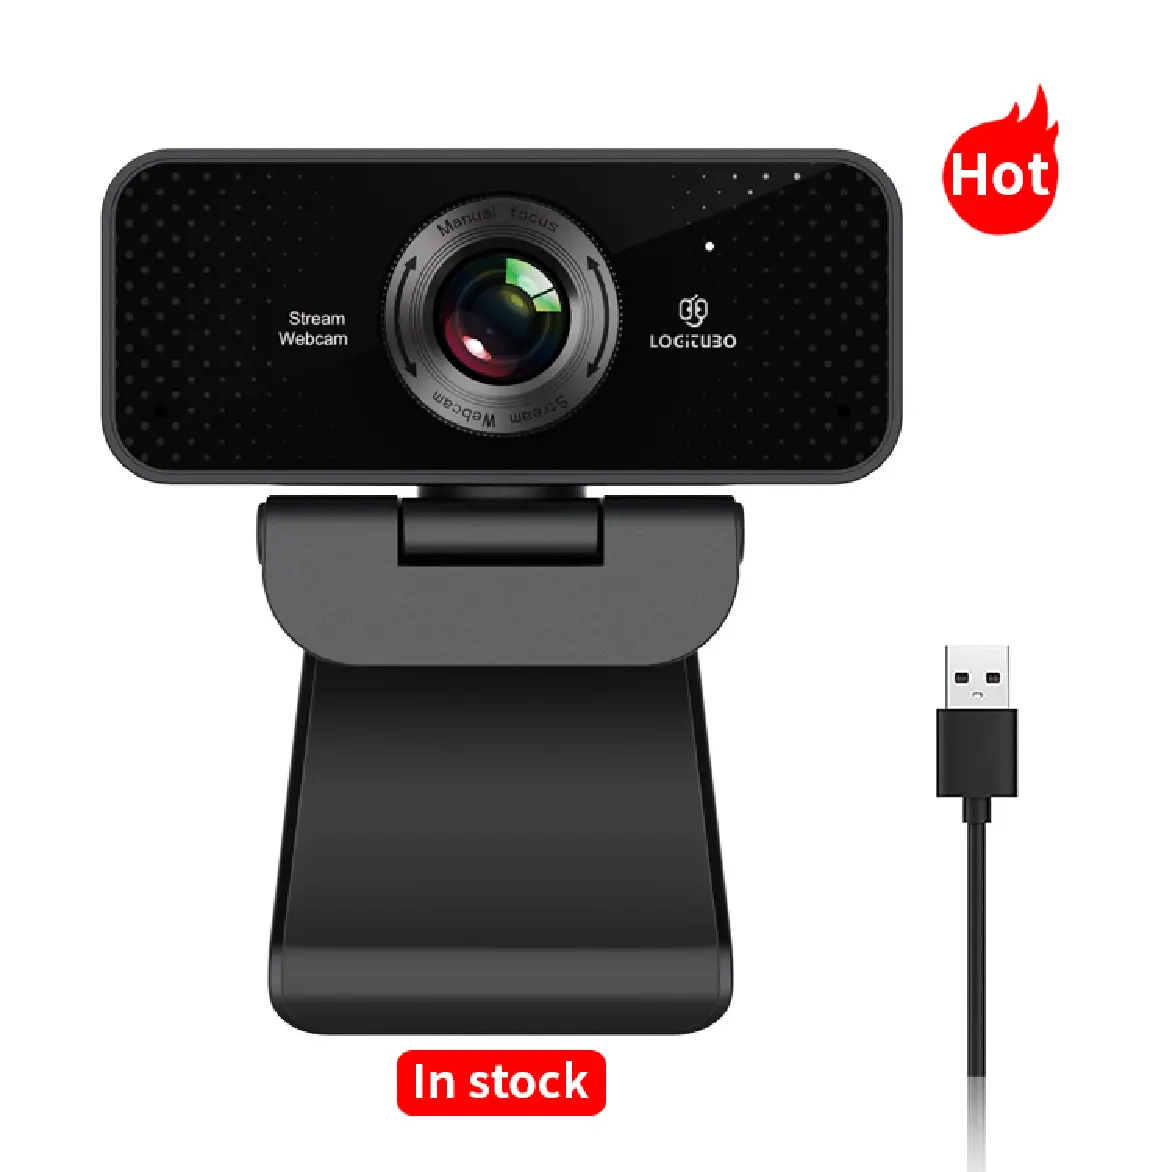 يوتيوب HD كاميرا الويب 1080p webcamera الكمبيوتر كاميرا 1080 كاميرا مع ميكروفون oem كاميرا